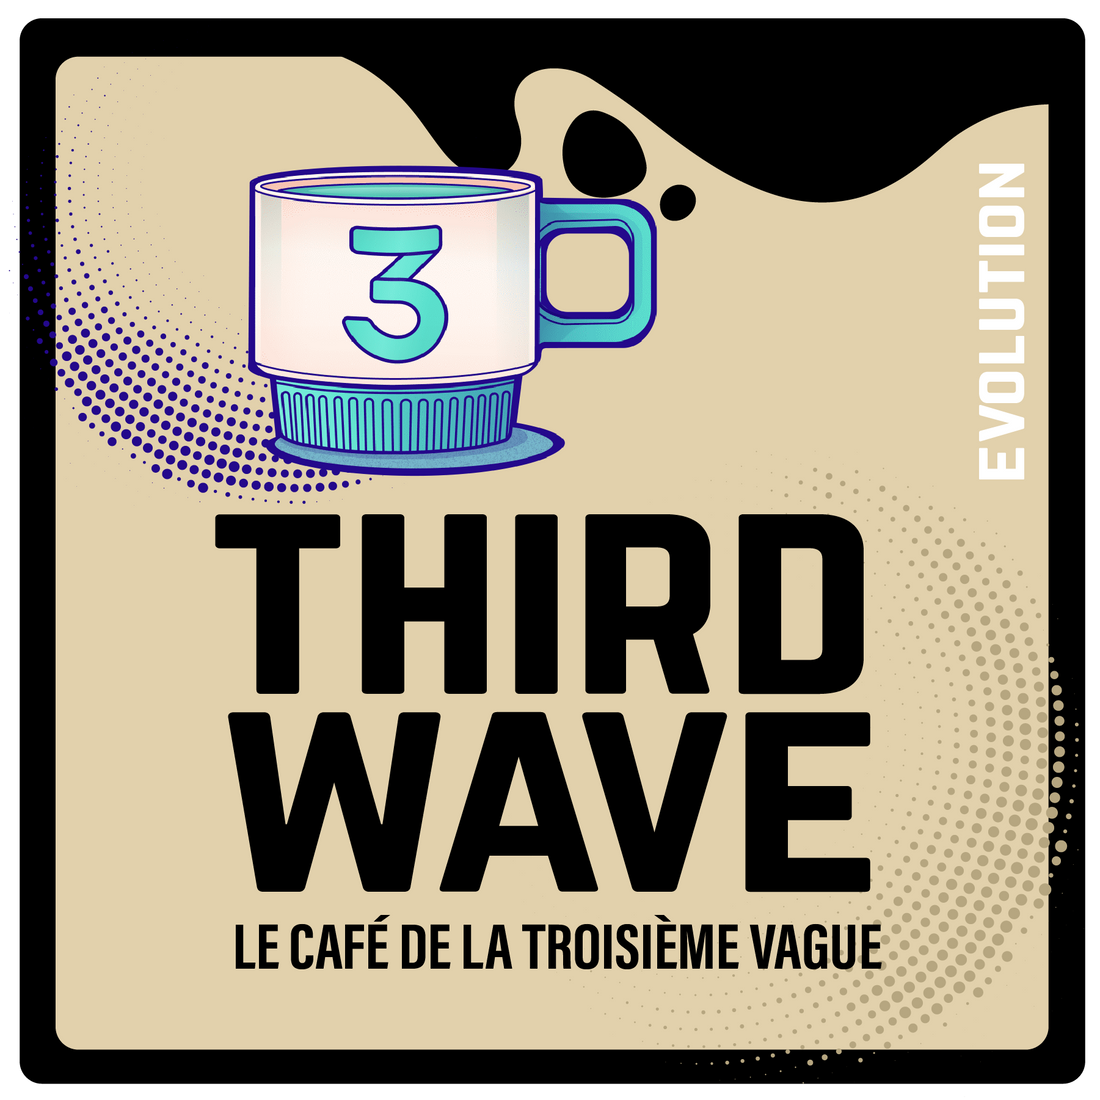 Third Wave | Le café de la troisième vague